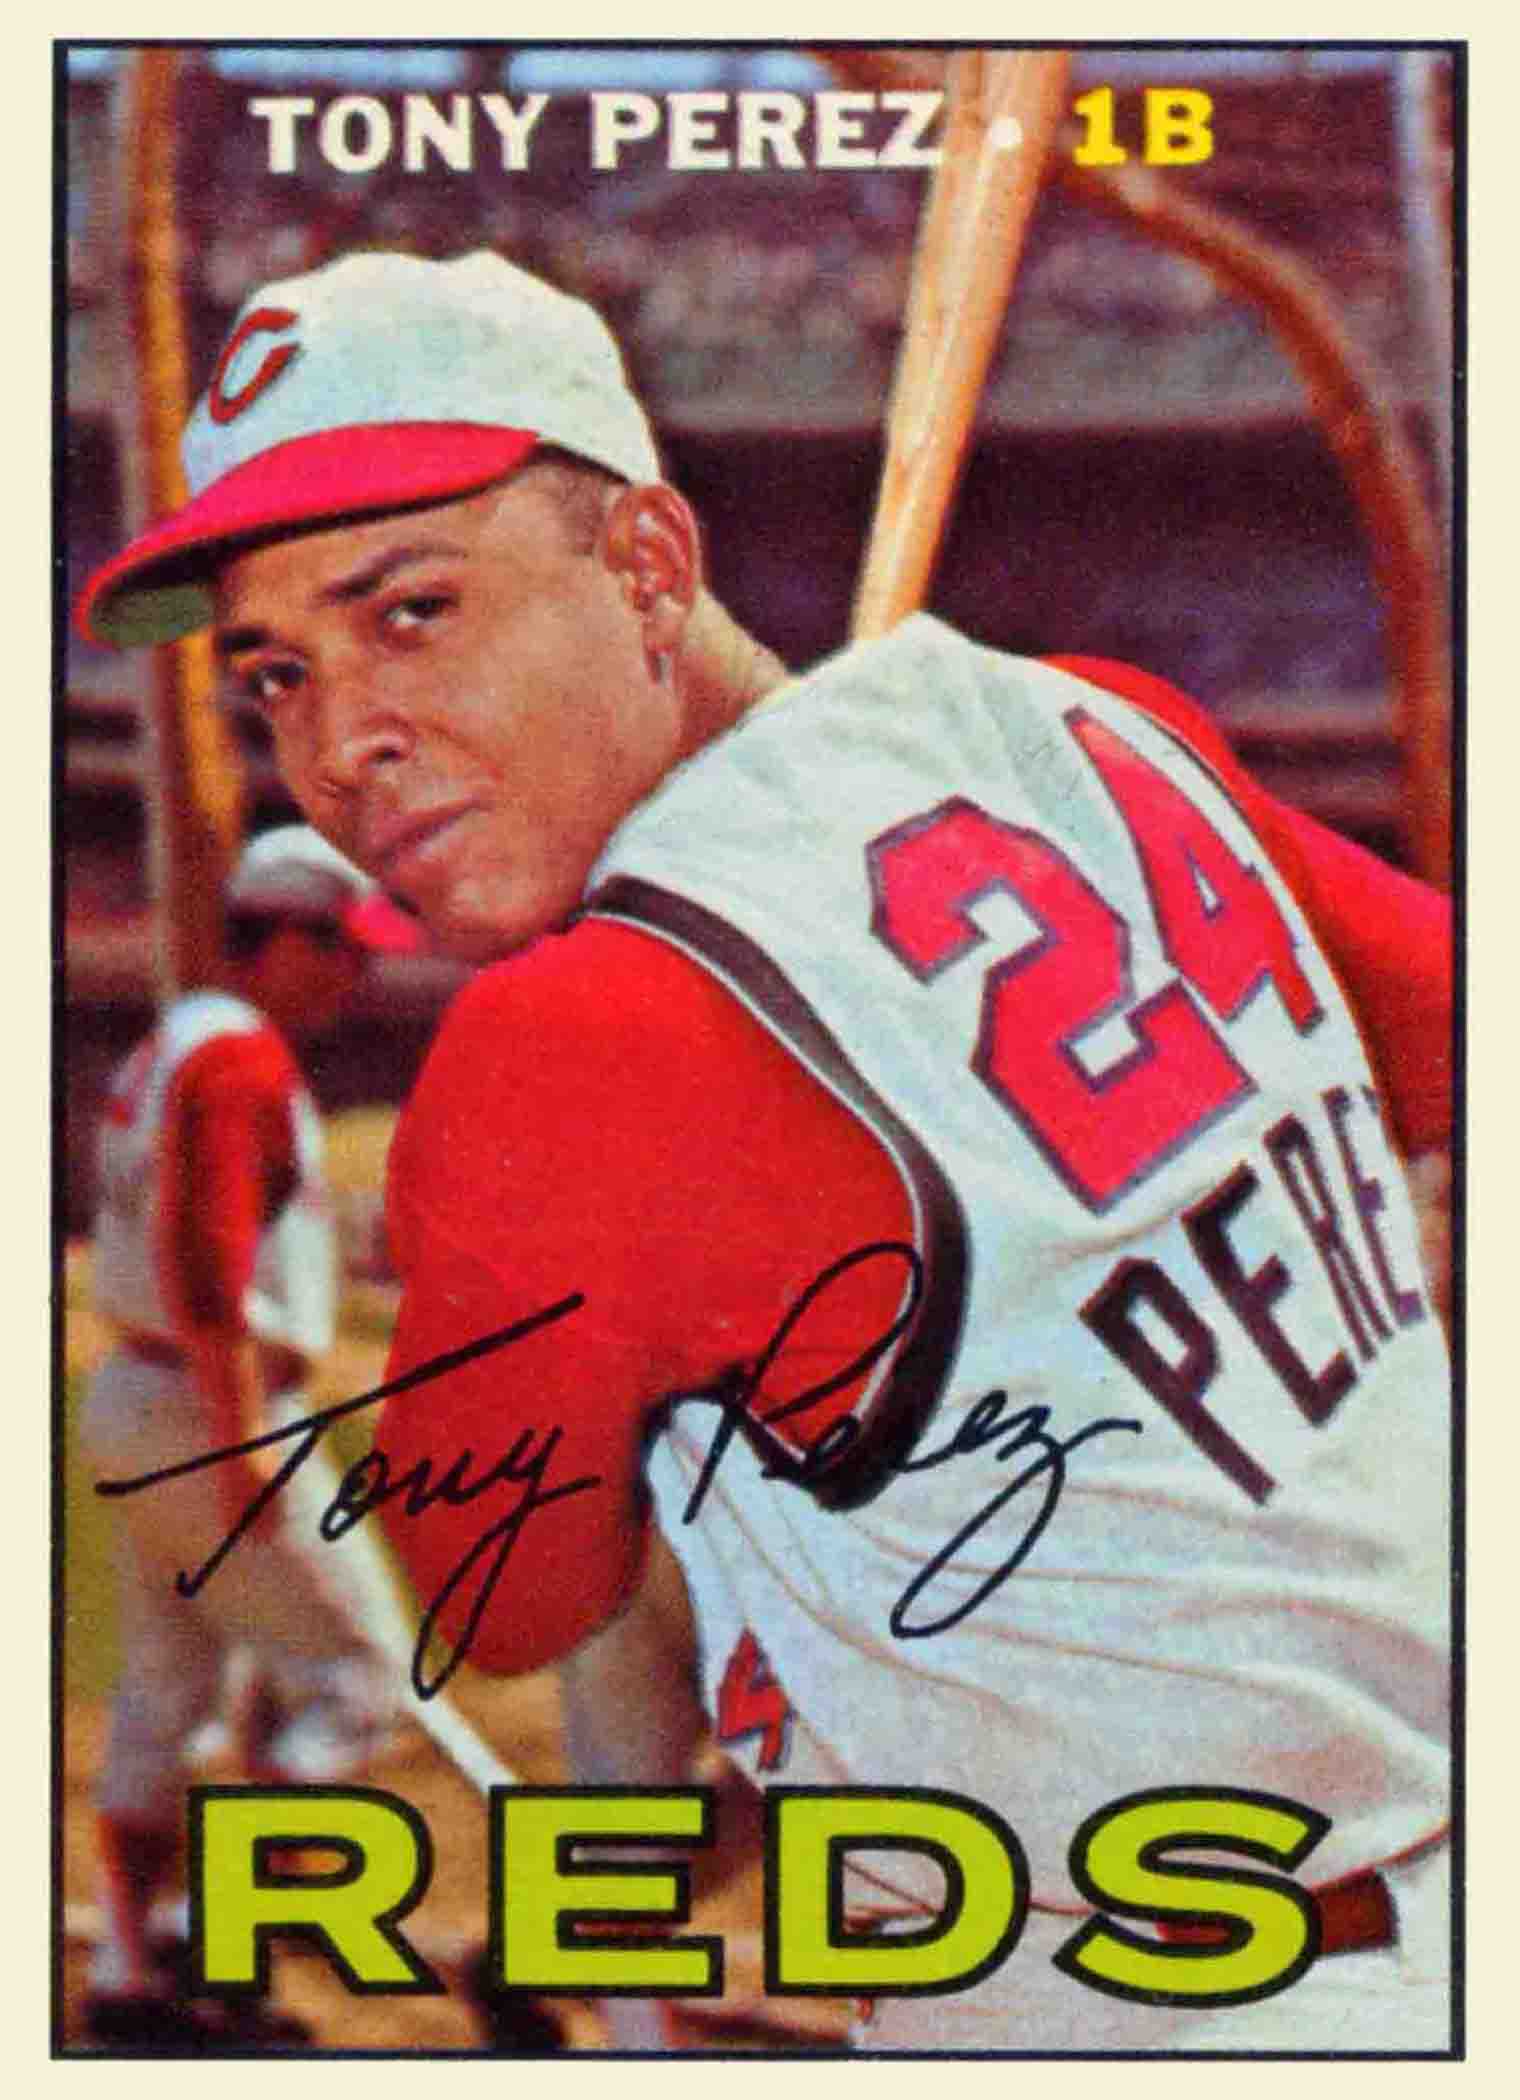 1974 Topps Tony Perez